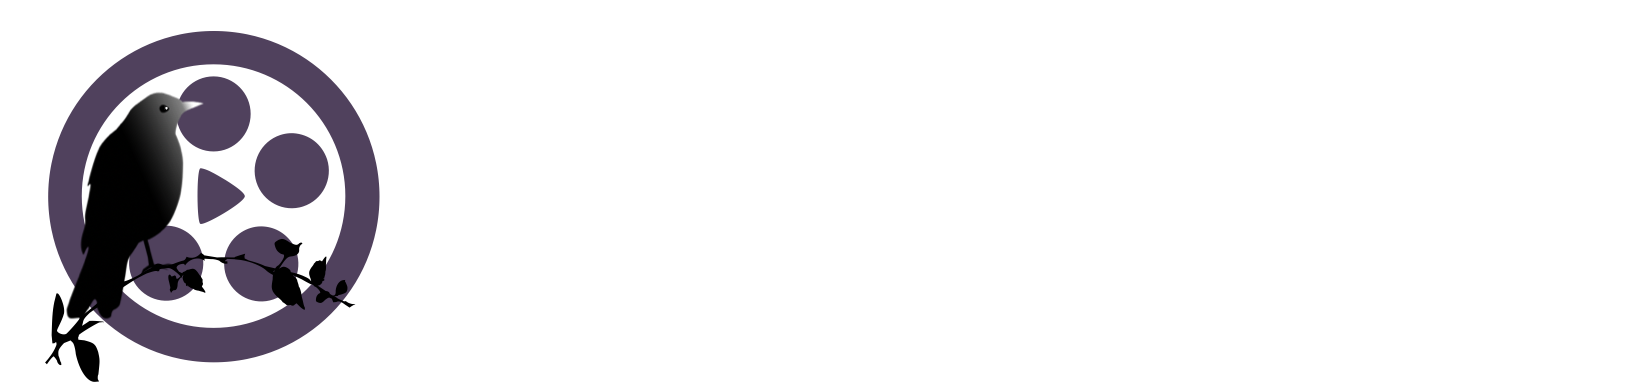 First Bird Films